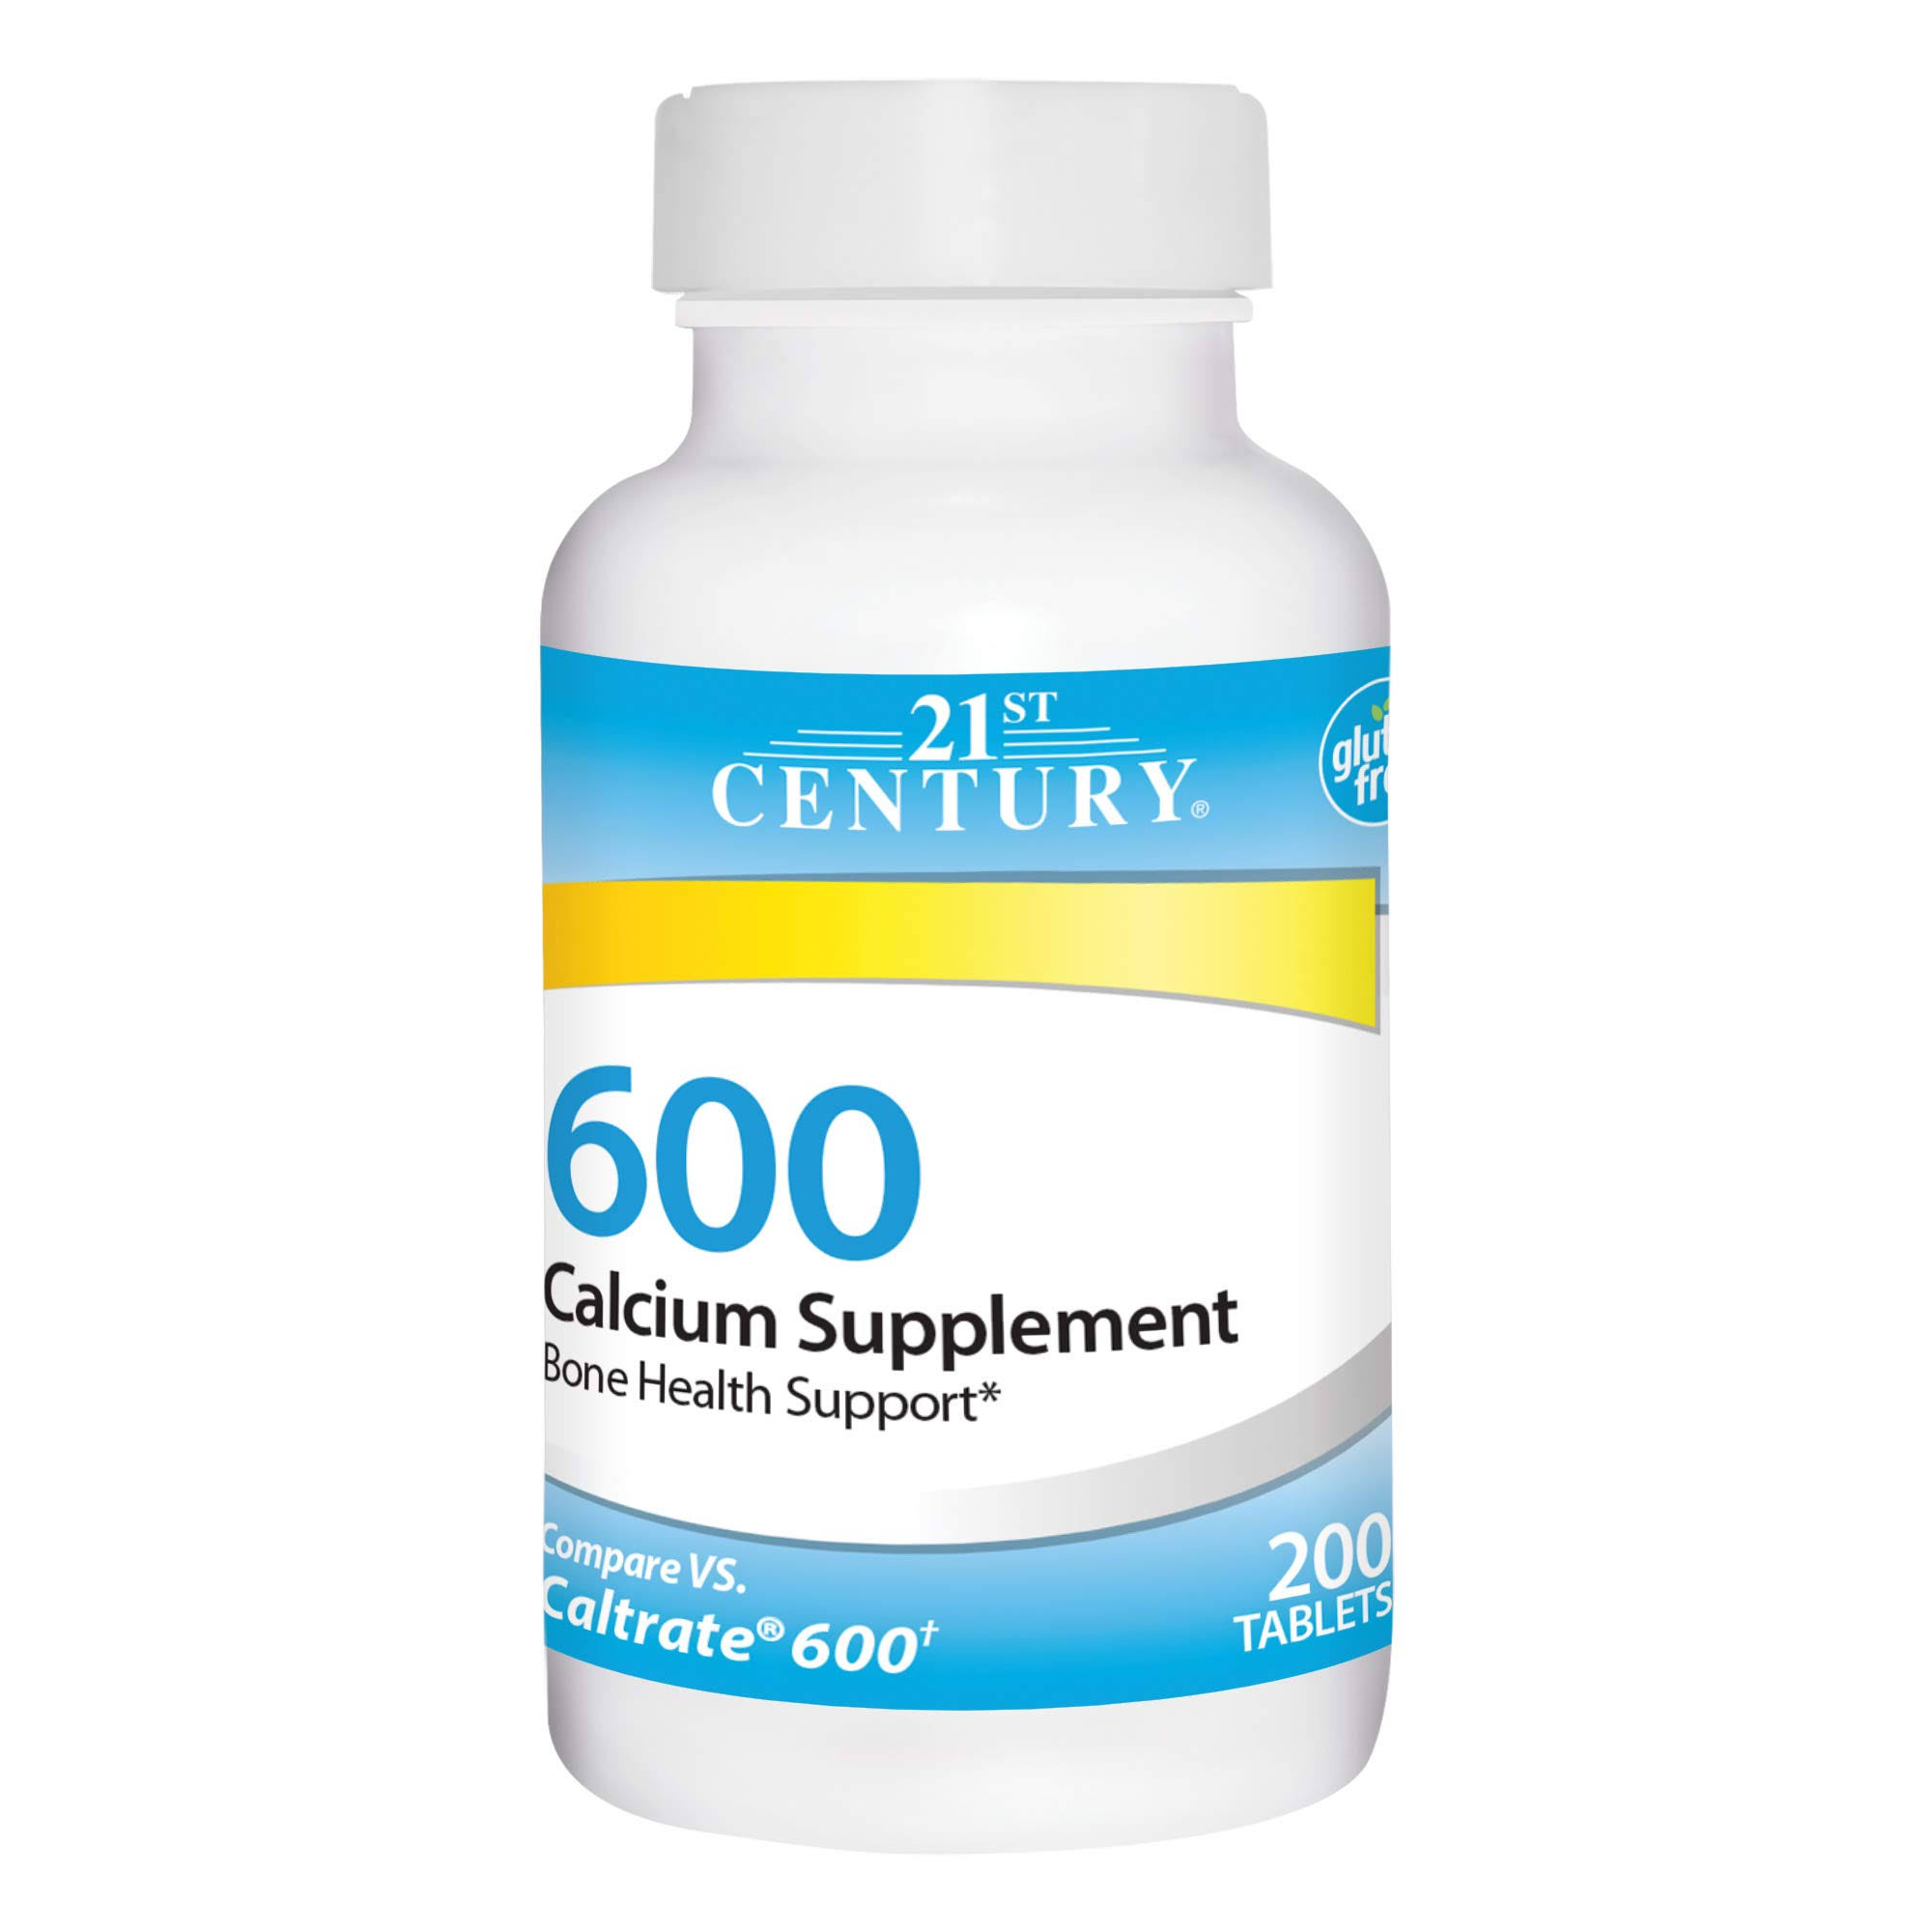 21st Century Calcium Supplement - 600mg, 200 Count